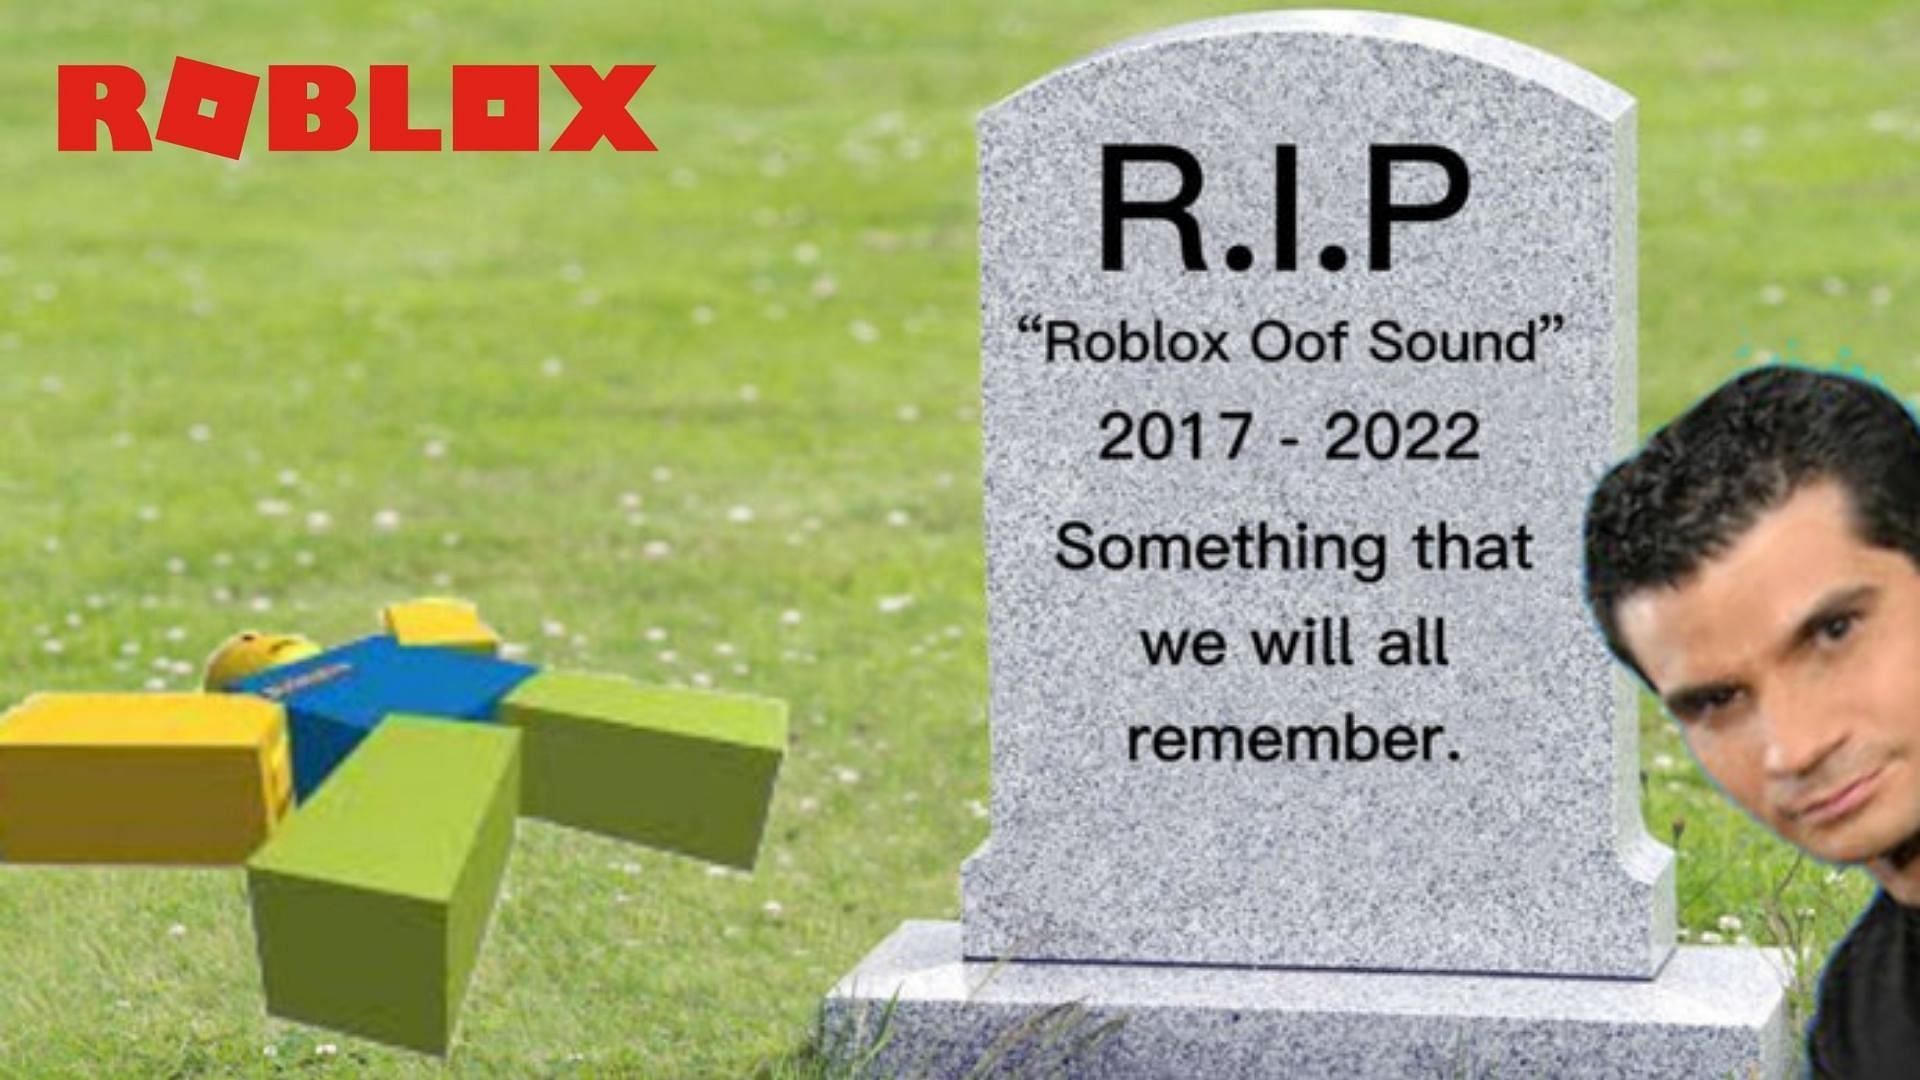 Roblox death sound, Roblox Wiki